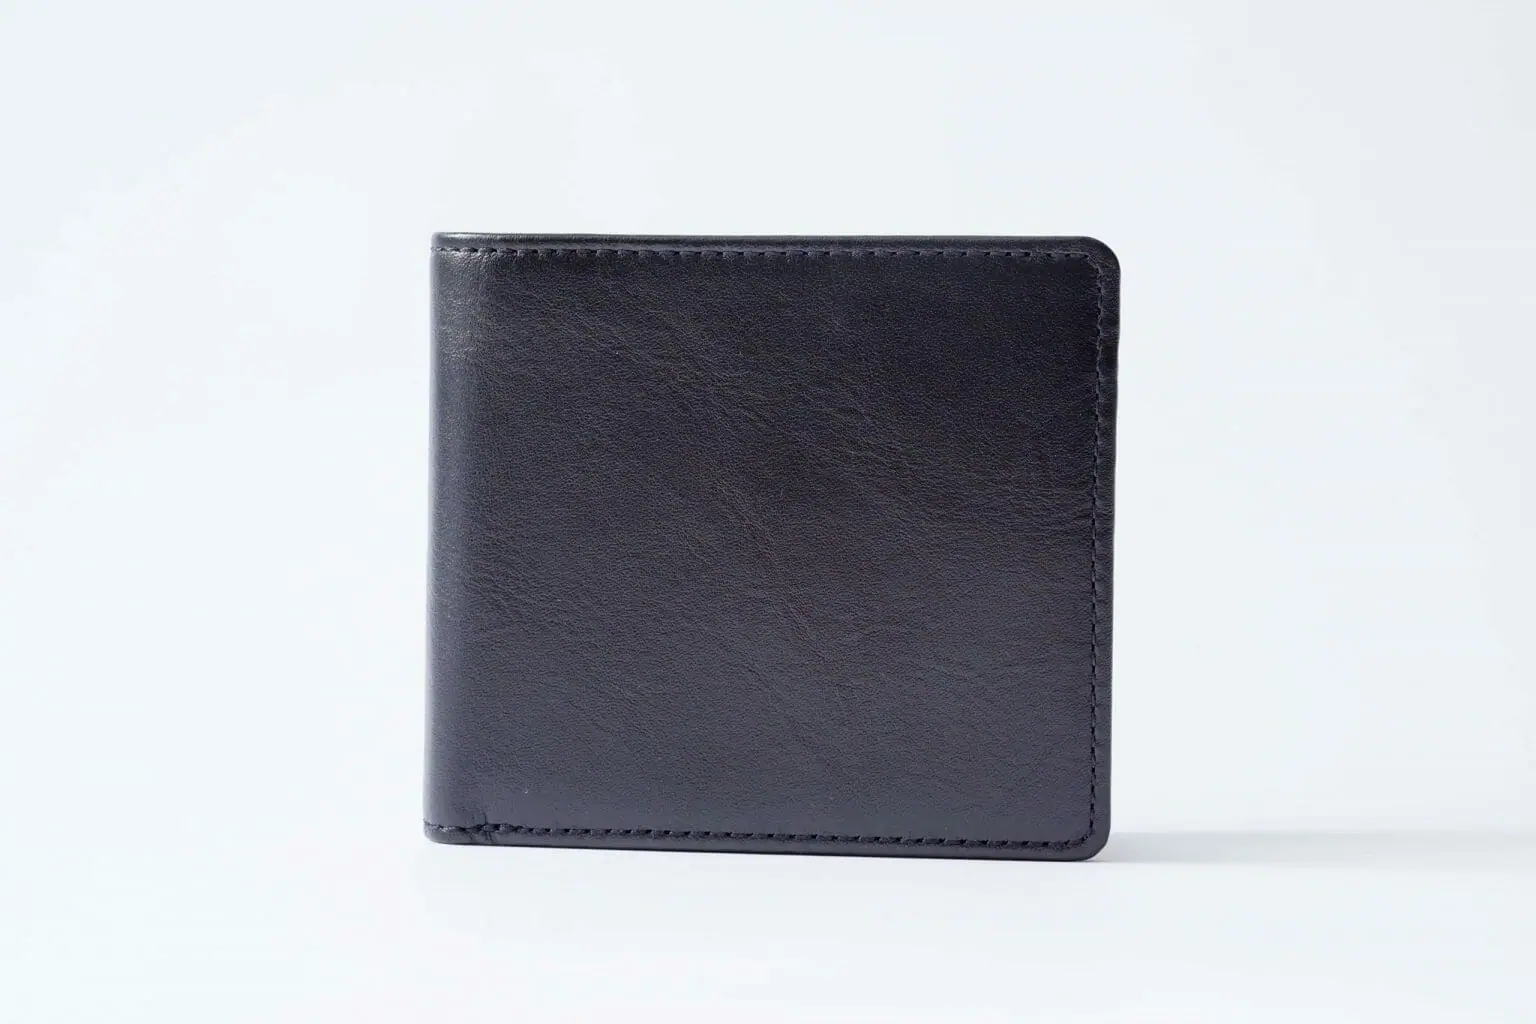 obm leatherオリジナル二つ折り財布です。残1あります。 - 折り財布